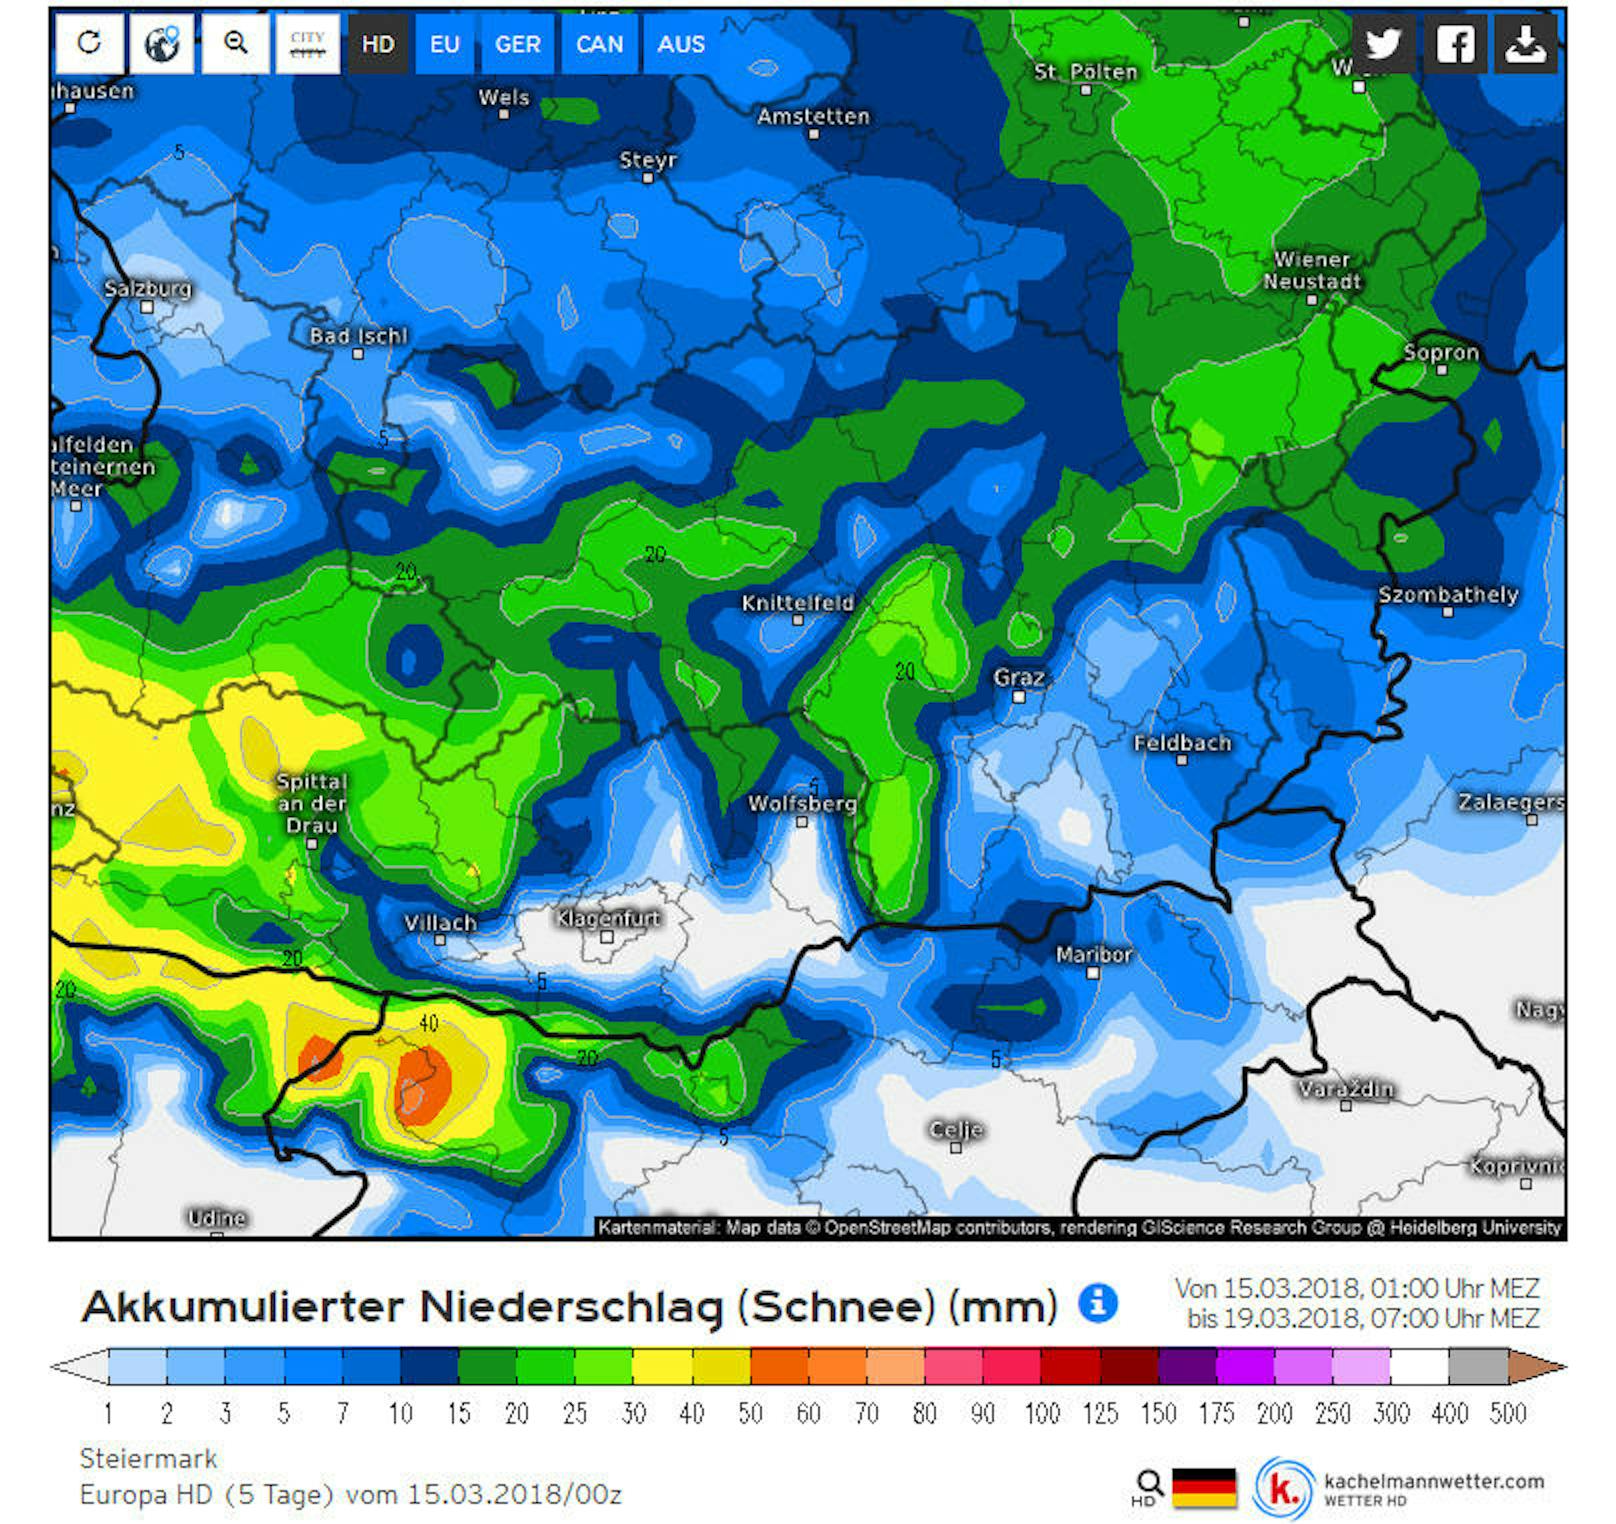 <b>Steiermark:</b> Niederschlagssumme (Schnee) in Millimeter im Zeitraum Donnerstag 15. bis Montag 19. März 2018.